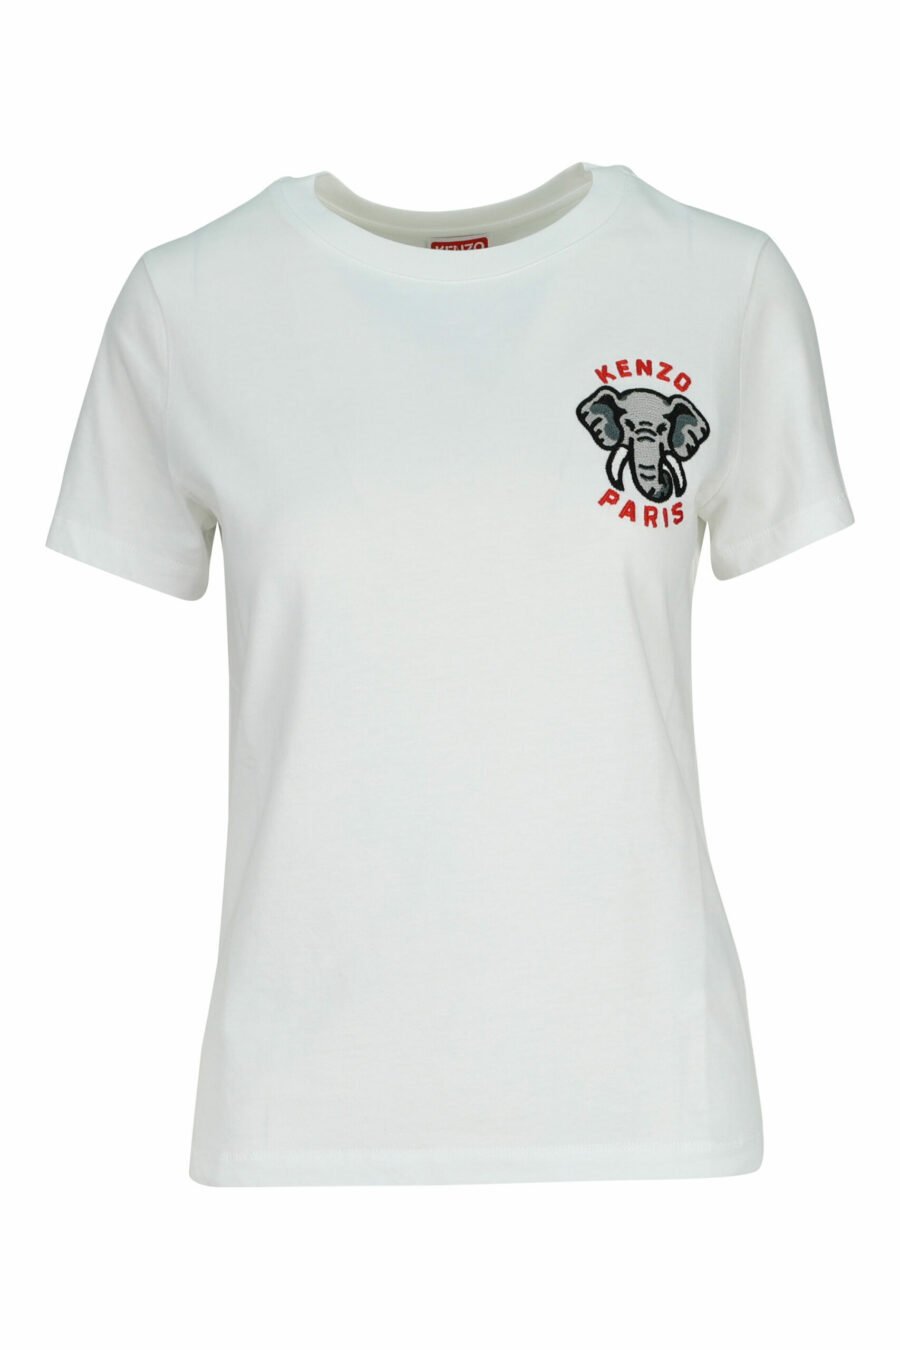 Weißes T-Shirt mit Mini-Logo "kenzo elephant" - 3612230620117 2 skaliert